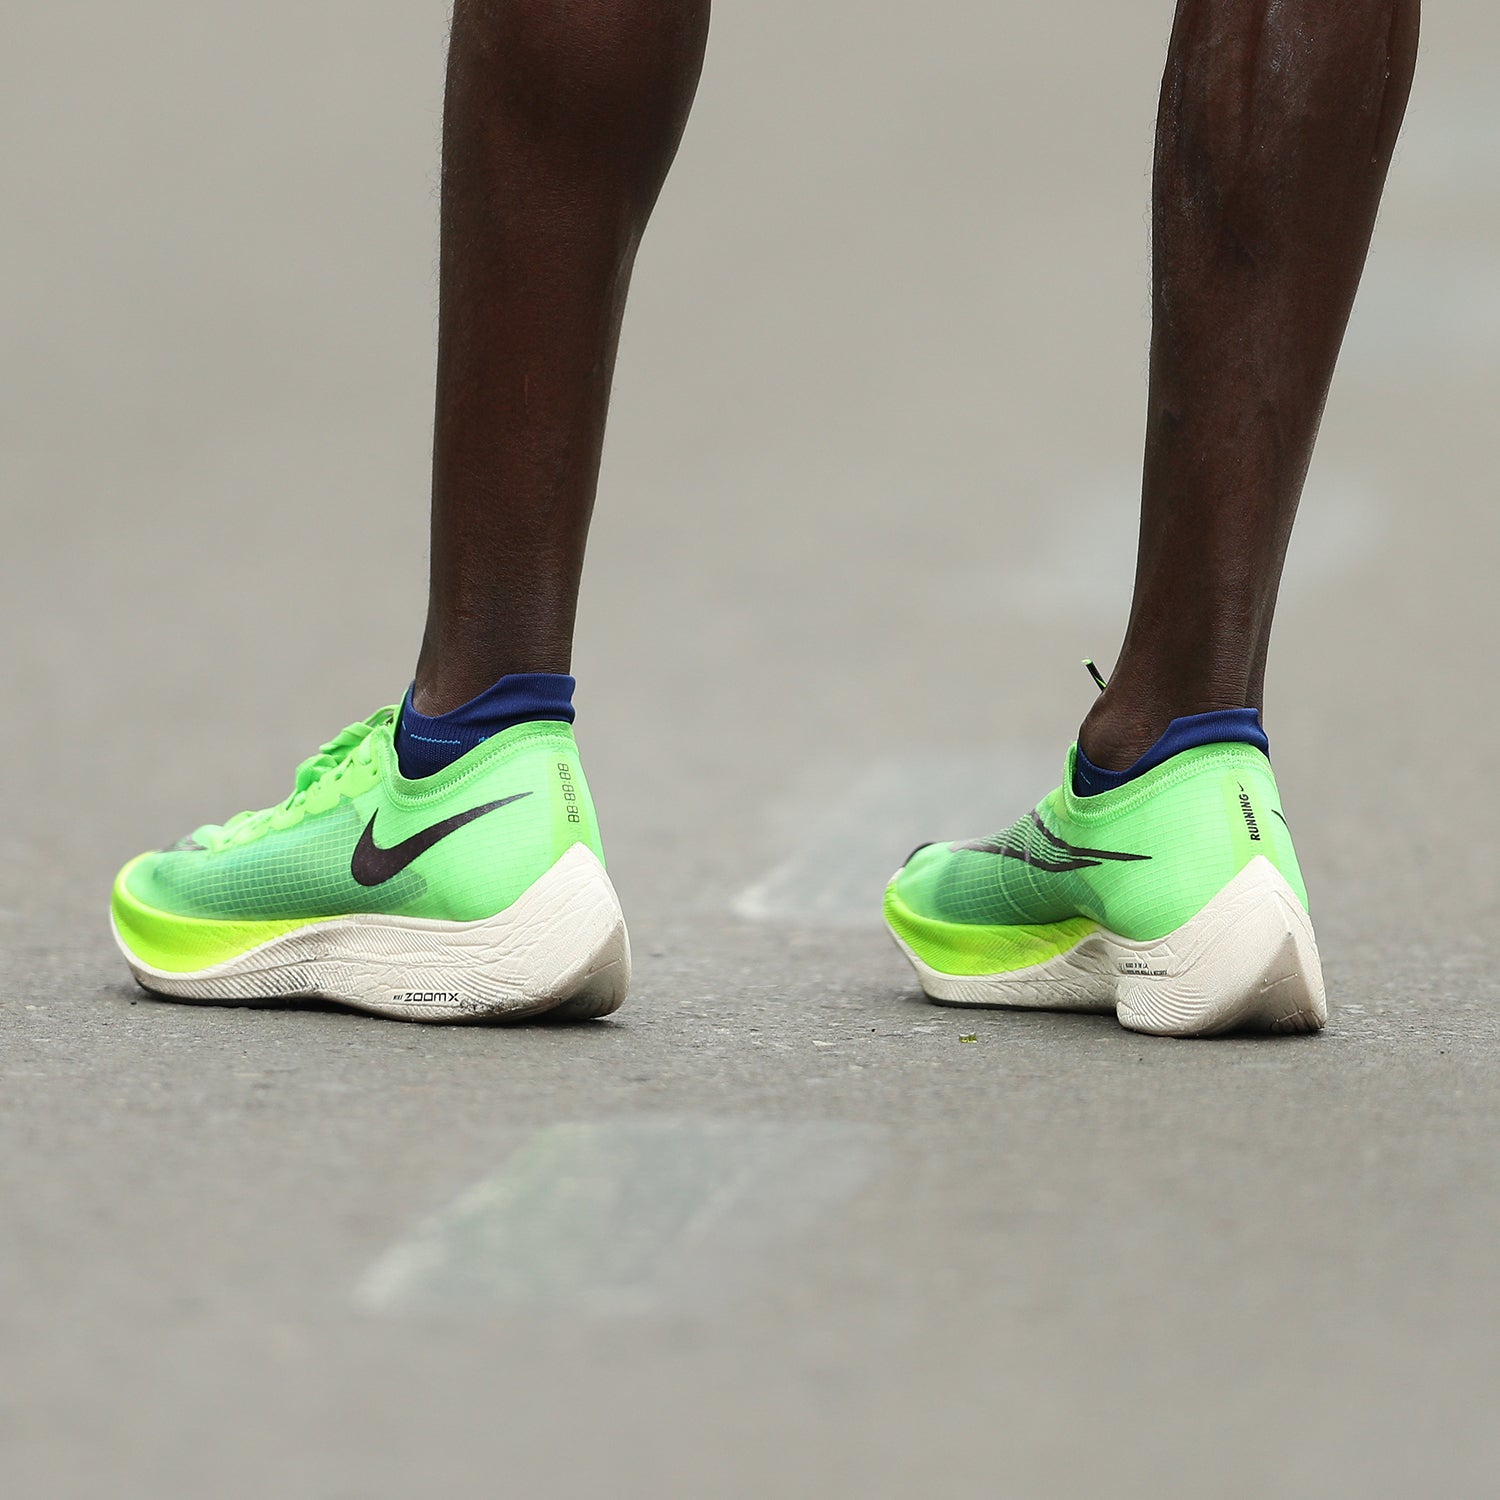 Elite Marathoners Weigh in on the Nike Vaporfly Debate